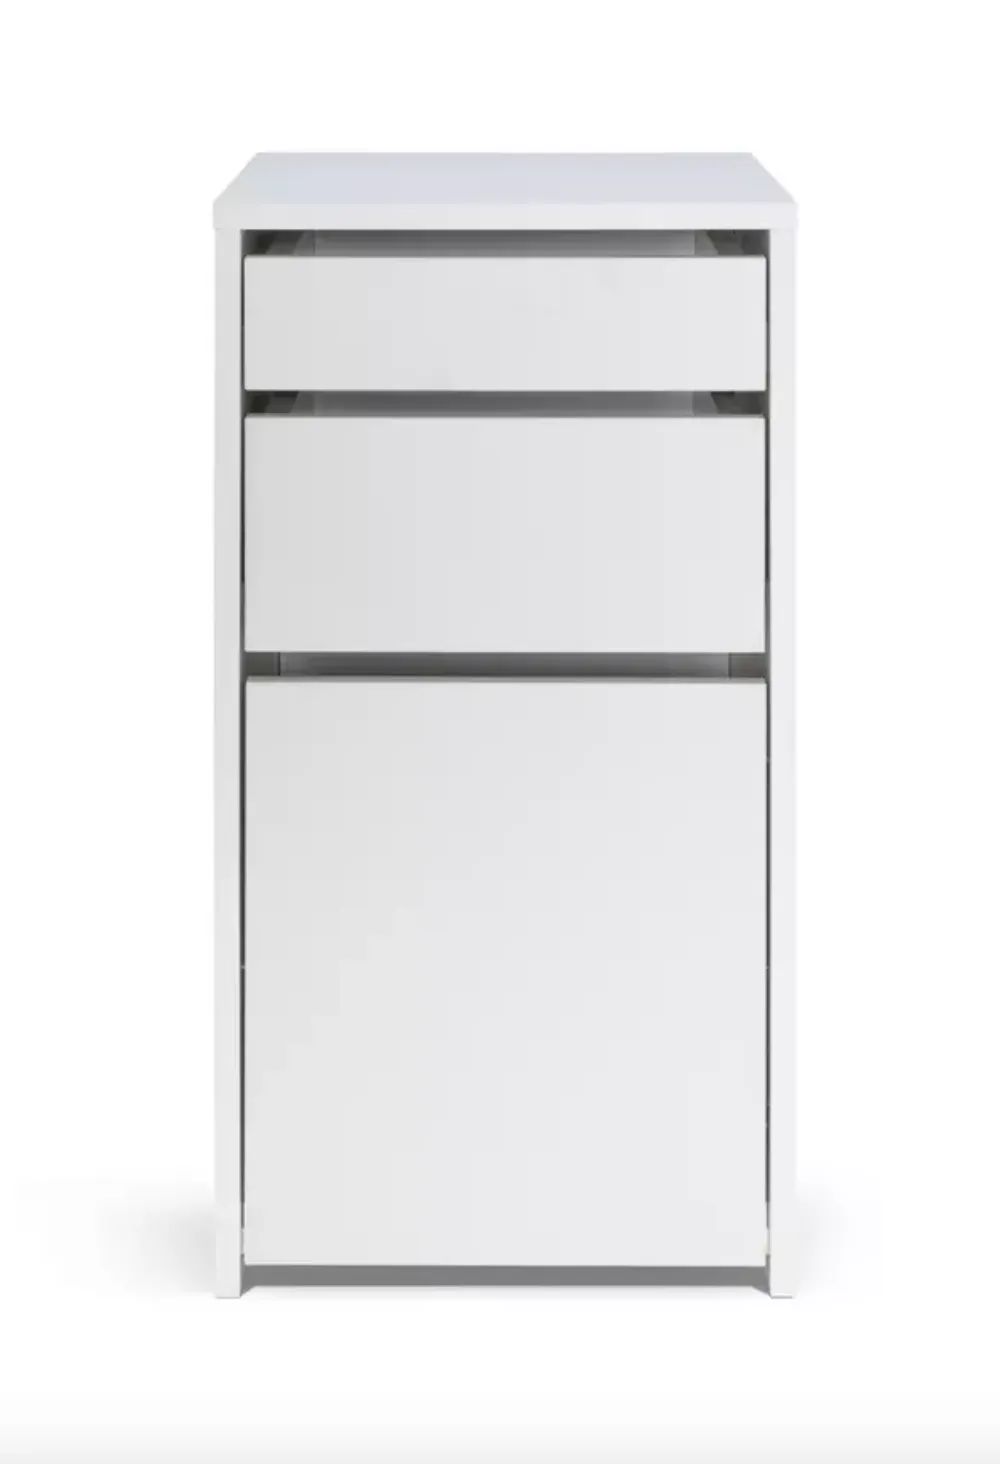 Habitat Pepper 2 Drawer Filing Cabinet - White, £50, Argos